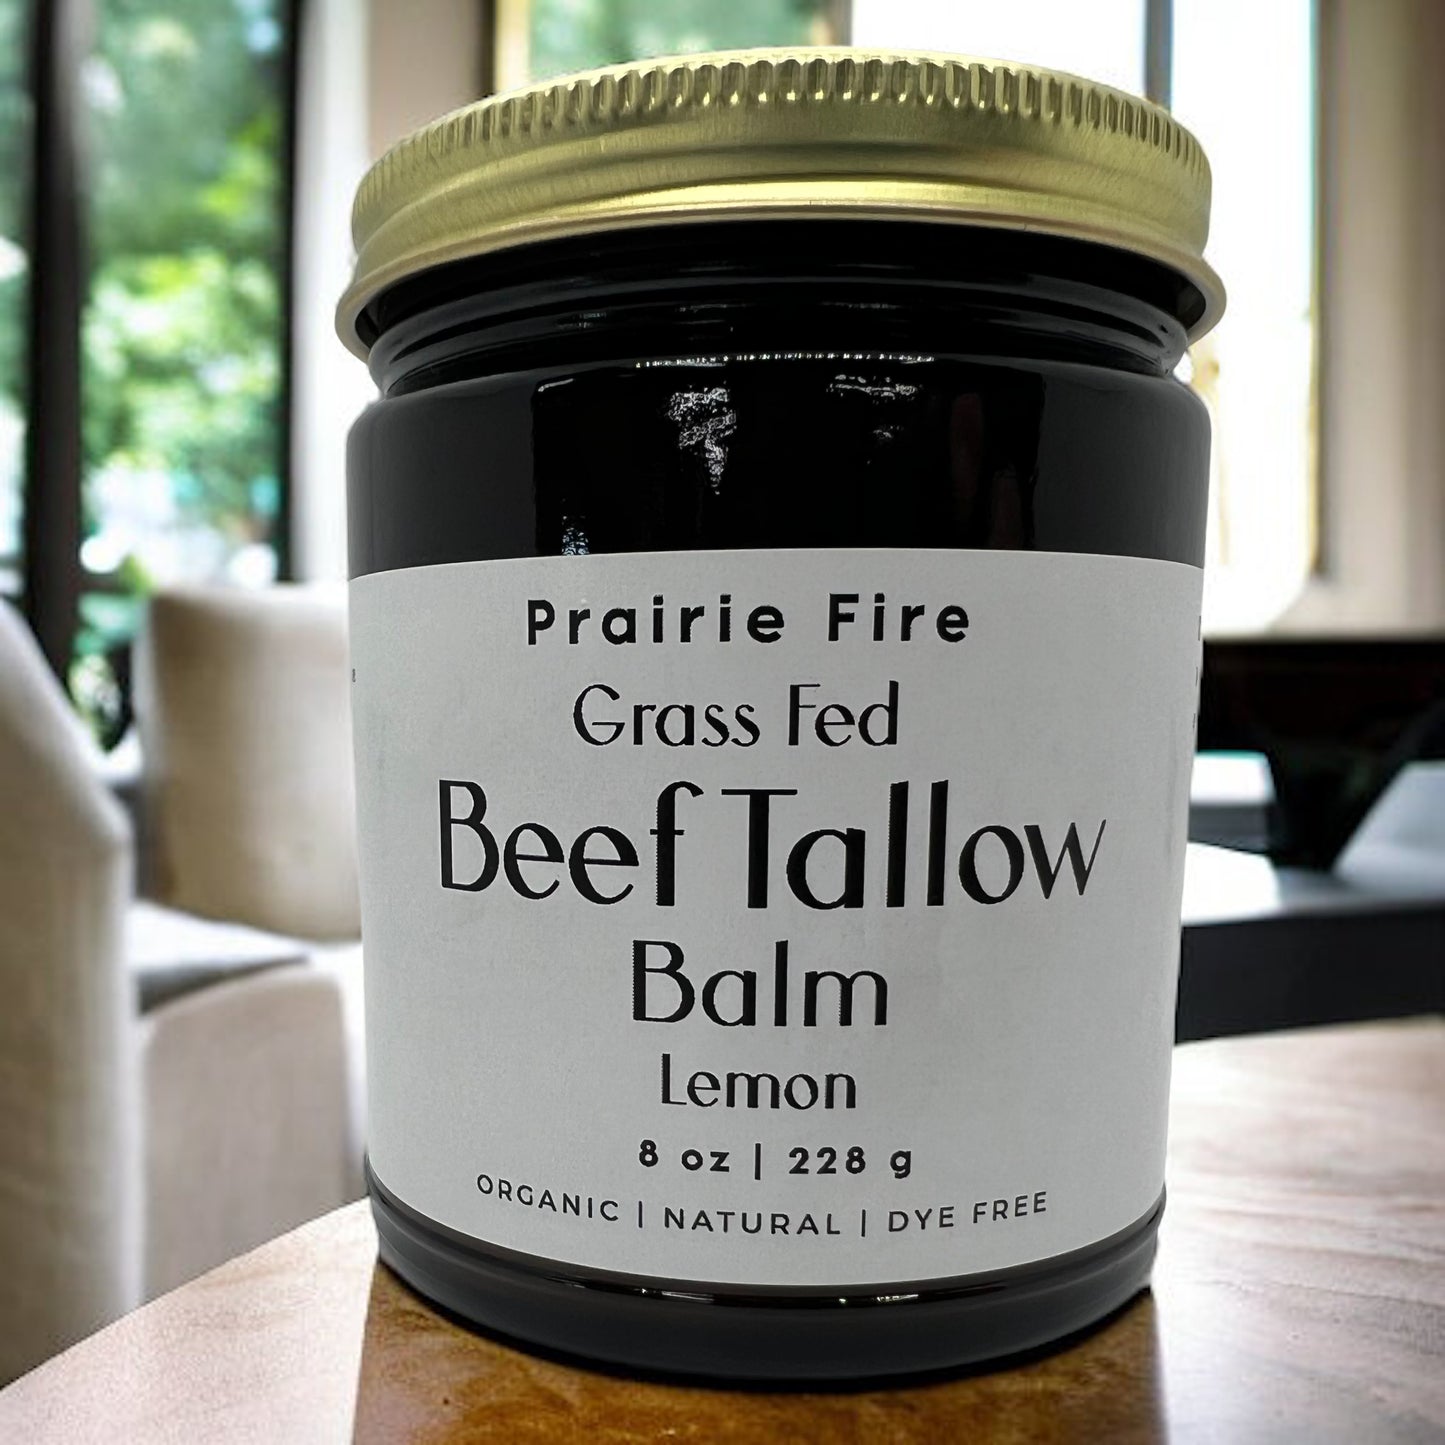 Beef Tallow Balm - 8 oz - Organic Grass Fed - Body Butter - Prairie Fire Kansas Native Pasture